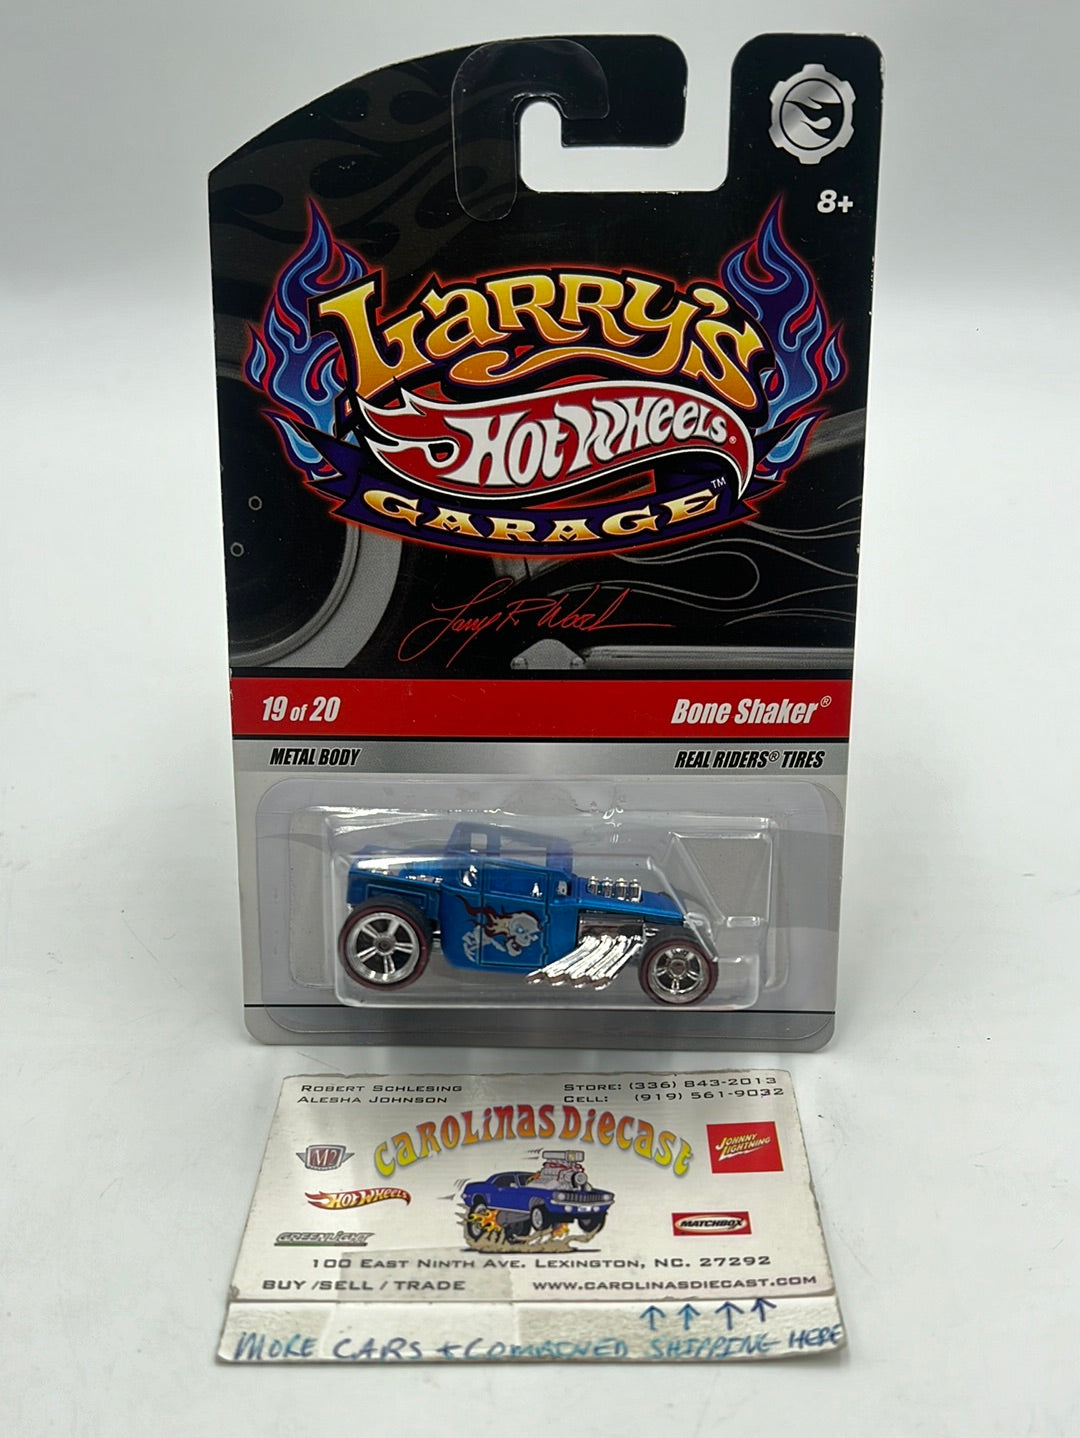 Hot wheels Larrys Garage Bone Shaker 19/20